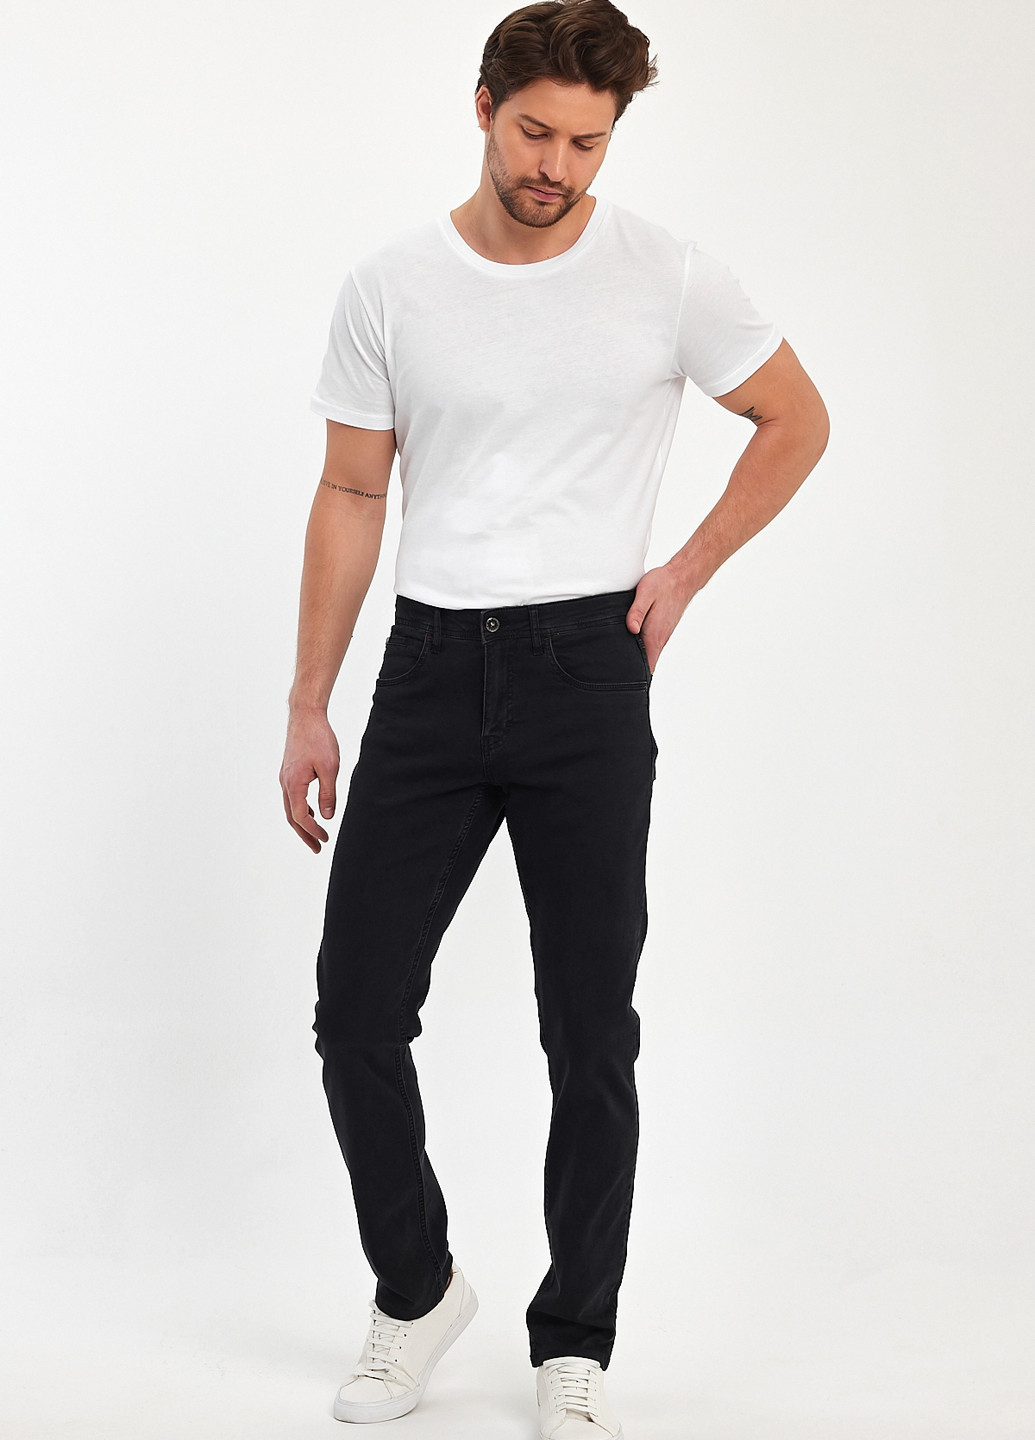 Черные демисезонные регюлар фит джинсы Trend Collection